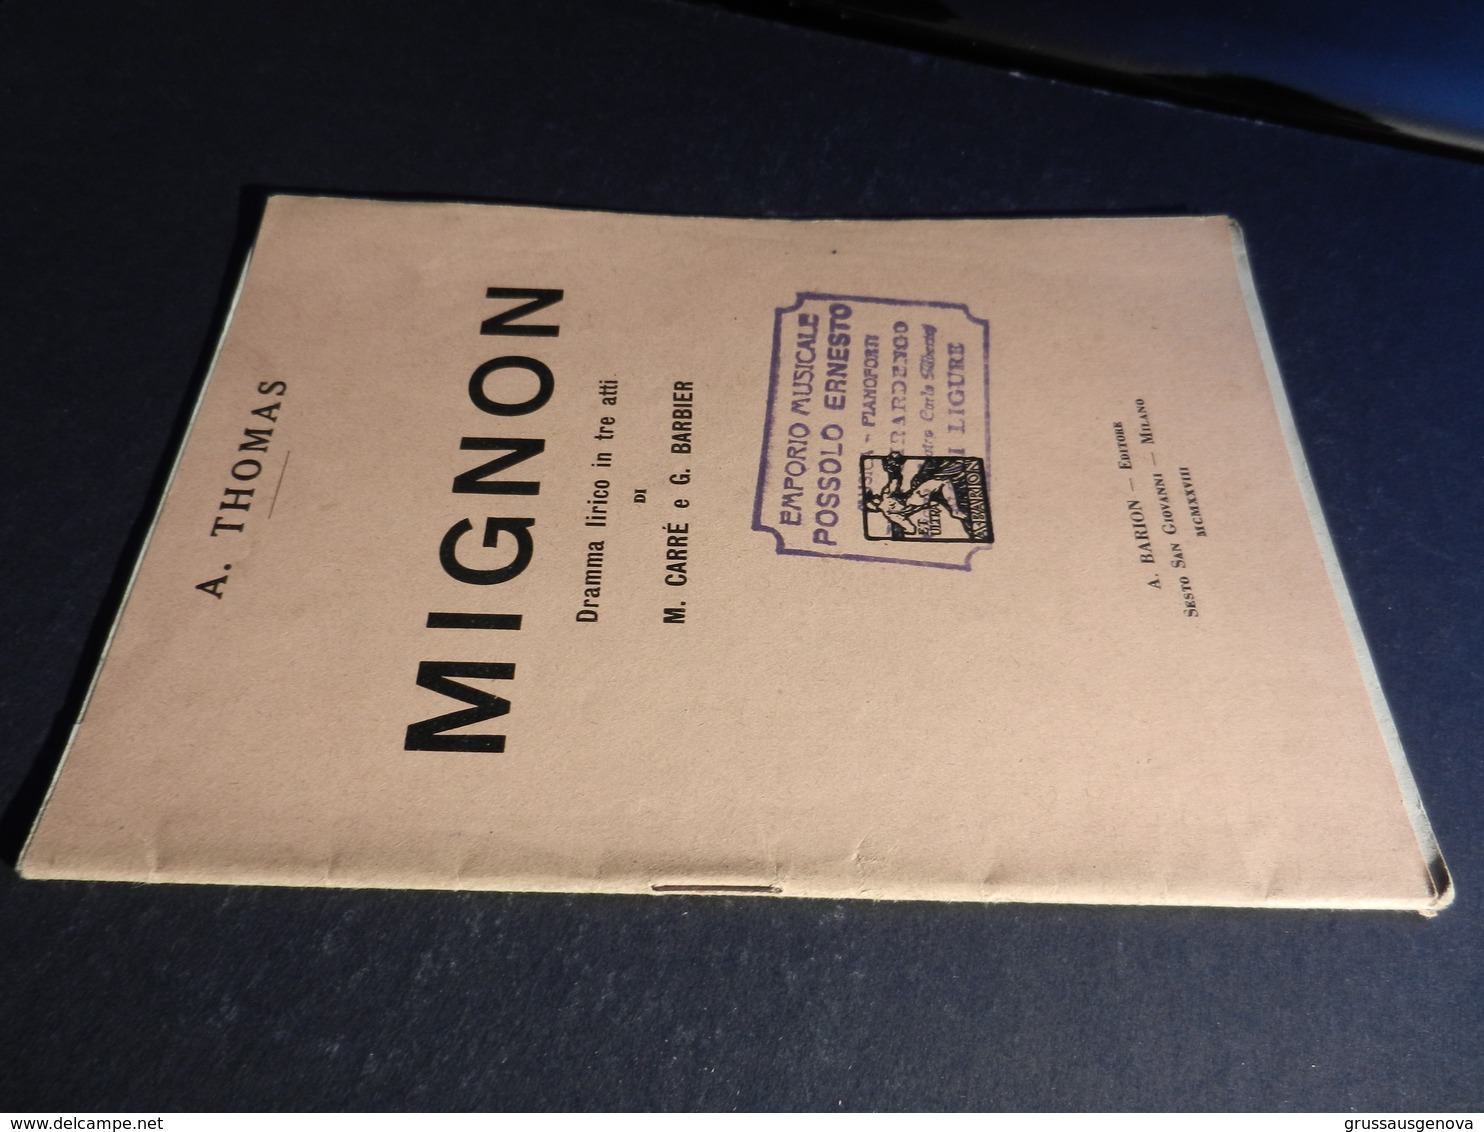 9) THOMAS MIGNON LIBRETTO D'OPERA EDIZIONE BARION 1928 - Opera